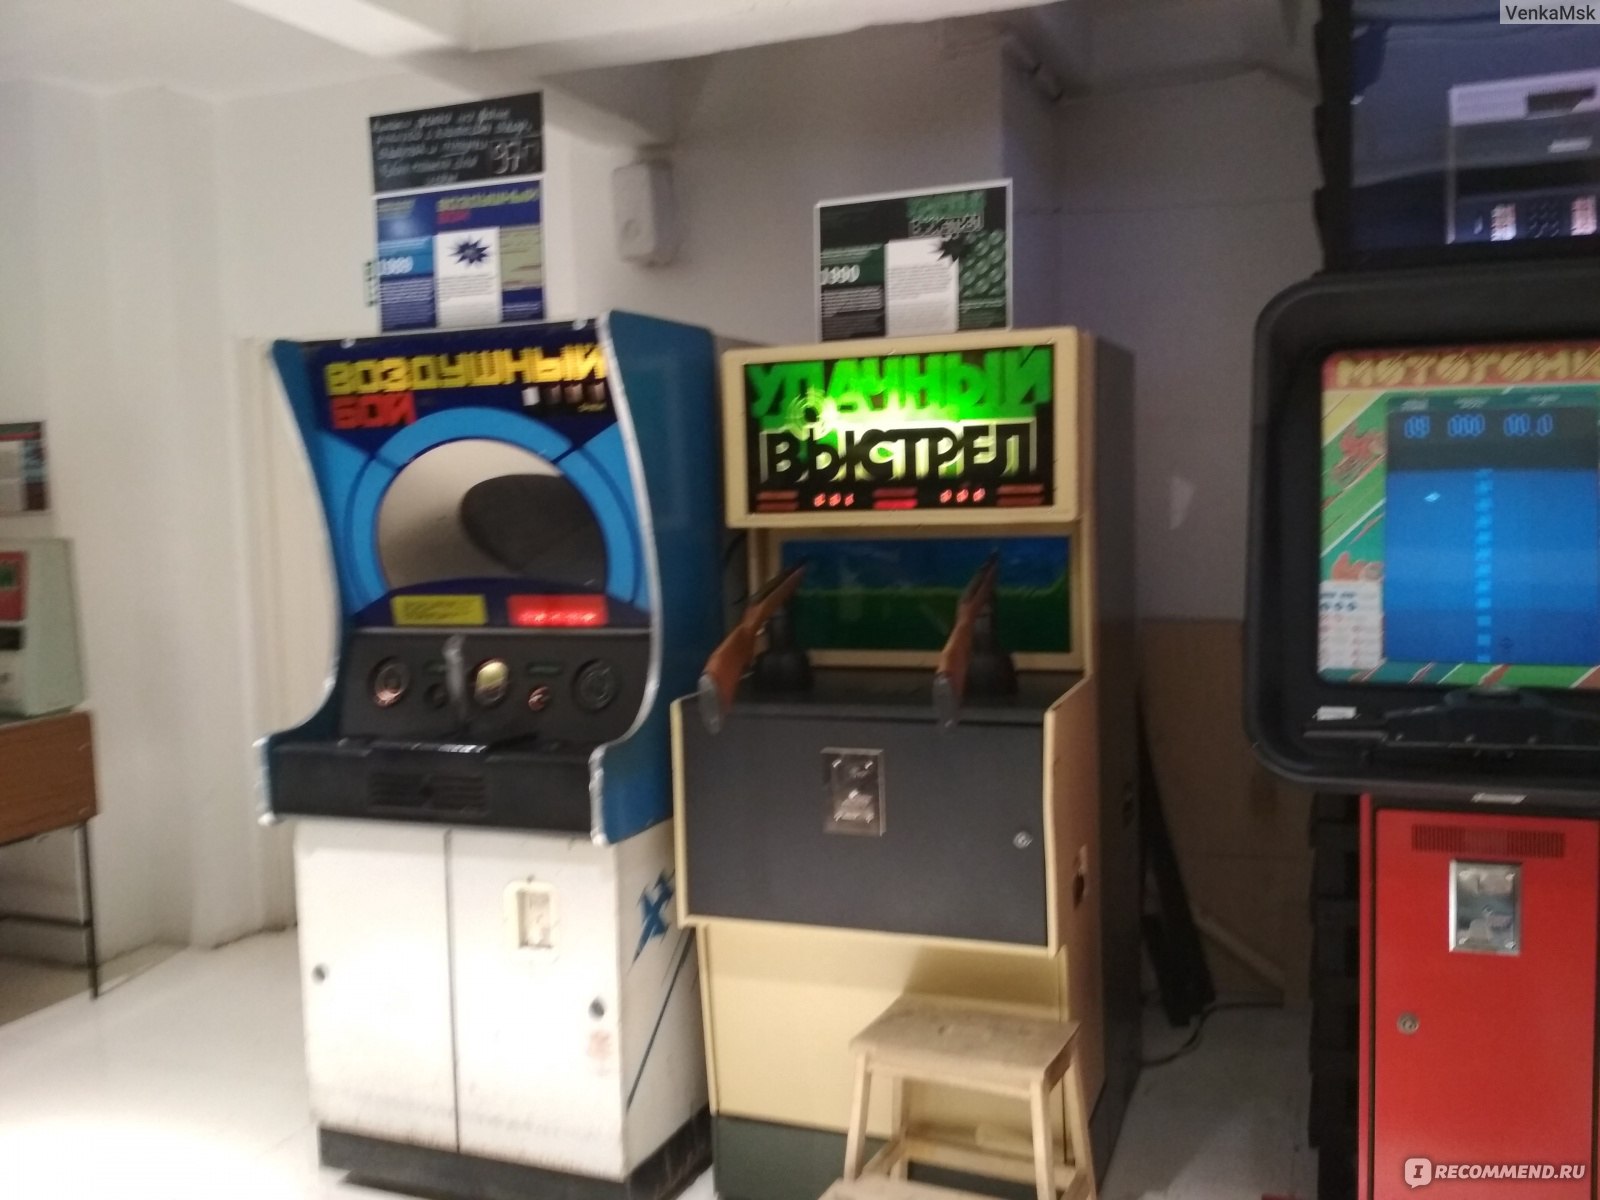 Игровые автоматы в магазинах москвы фильм казино 1995 смотреть онлайн в hd